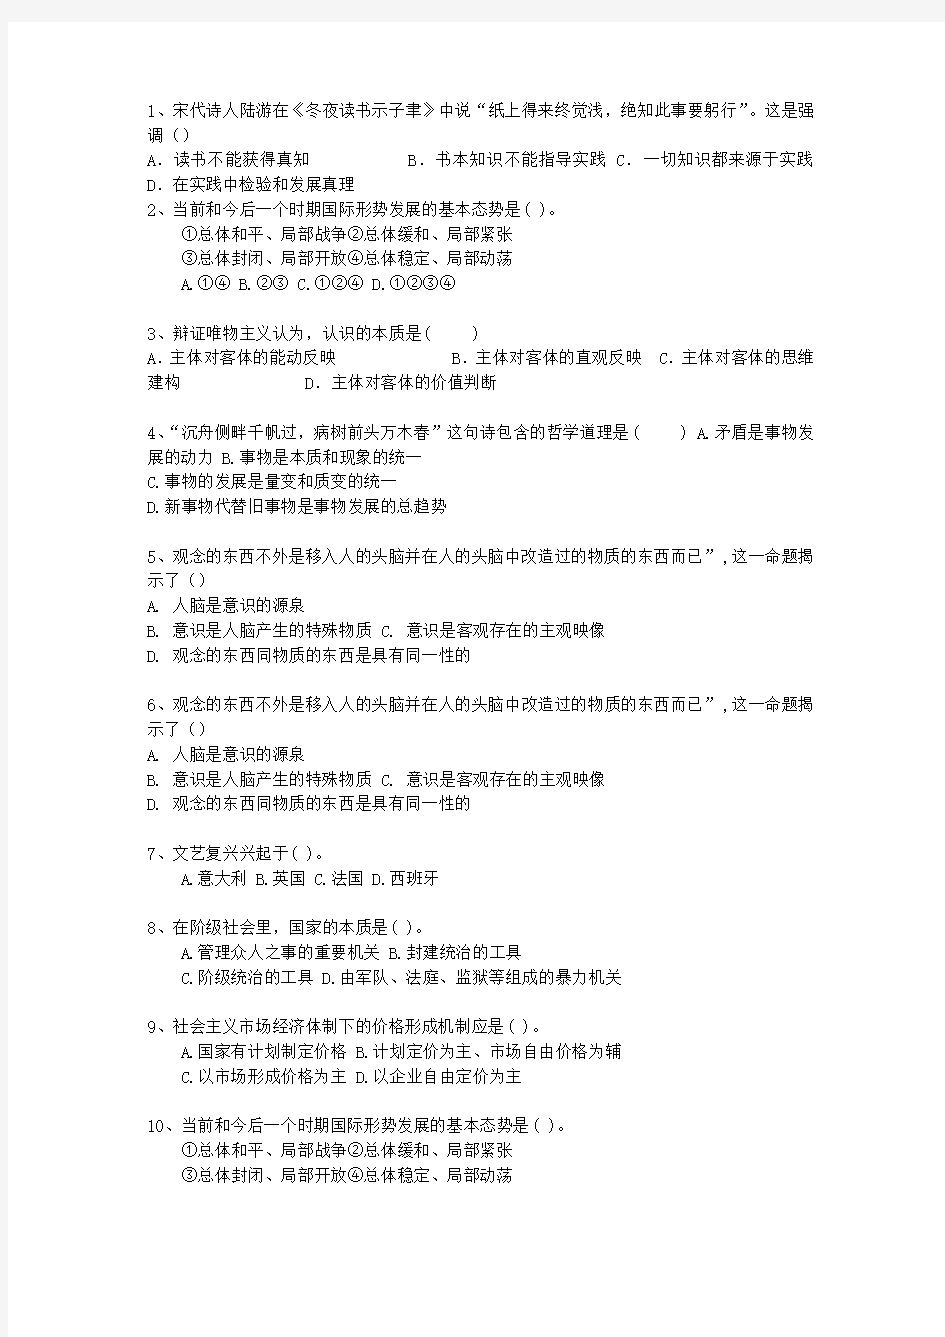 2013贵州省事业单位招聘考试公共基础知识真题演练汇总